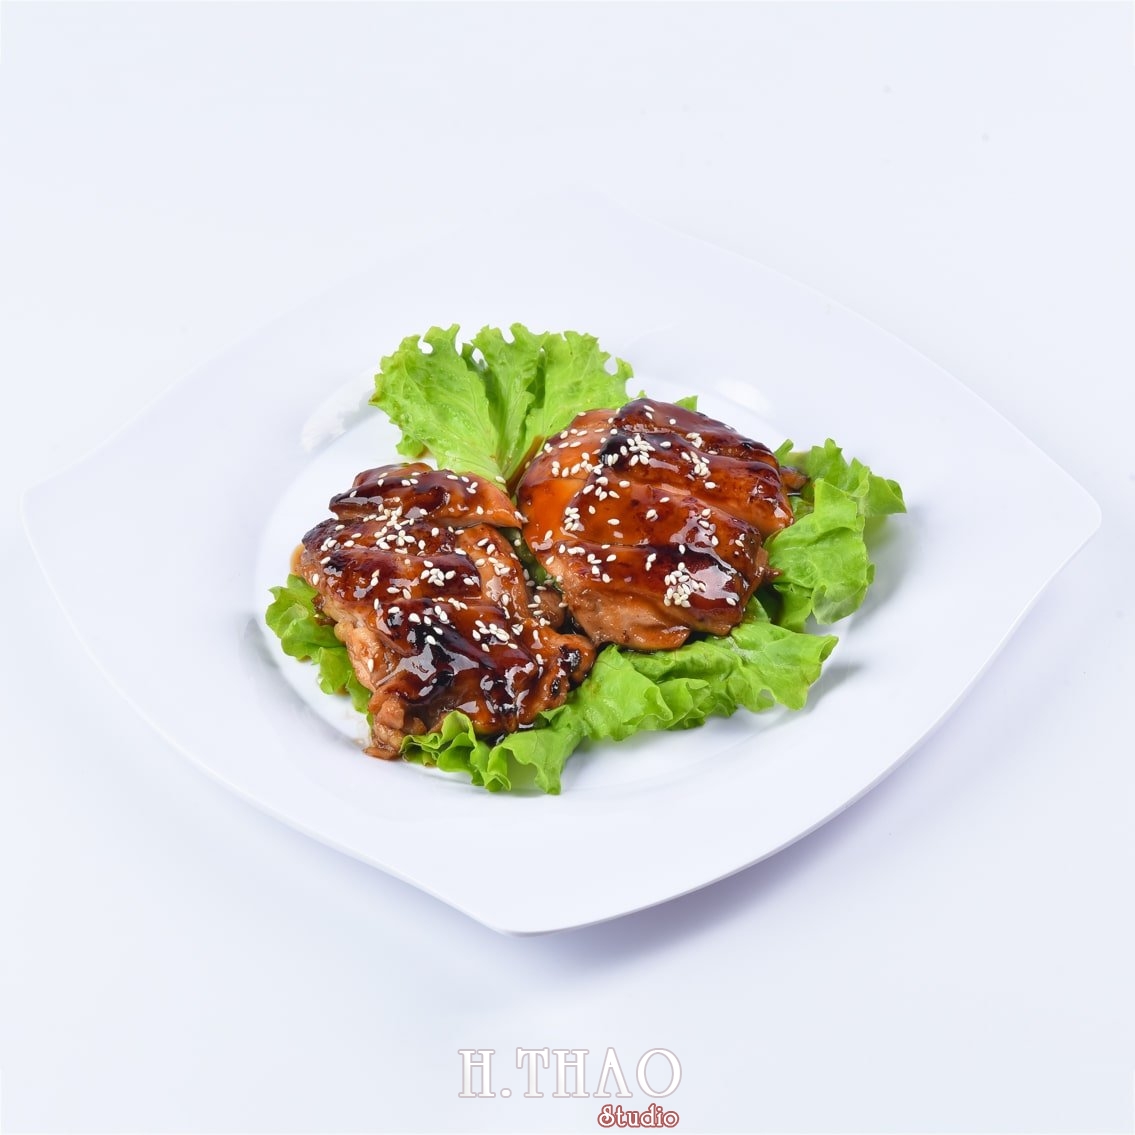 Anh food nen trang 7 min - Dịch vụ chụp ảnh đồ ăn đẹp, giá rẻ tại TpHCM - HThao Studio